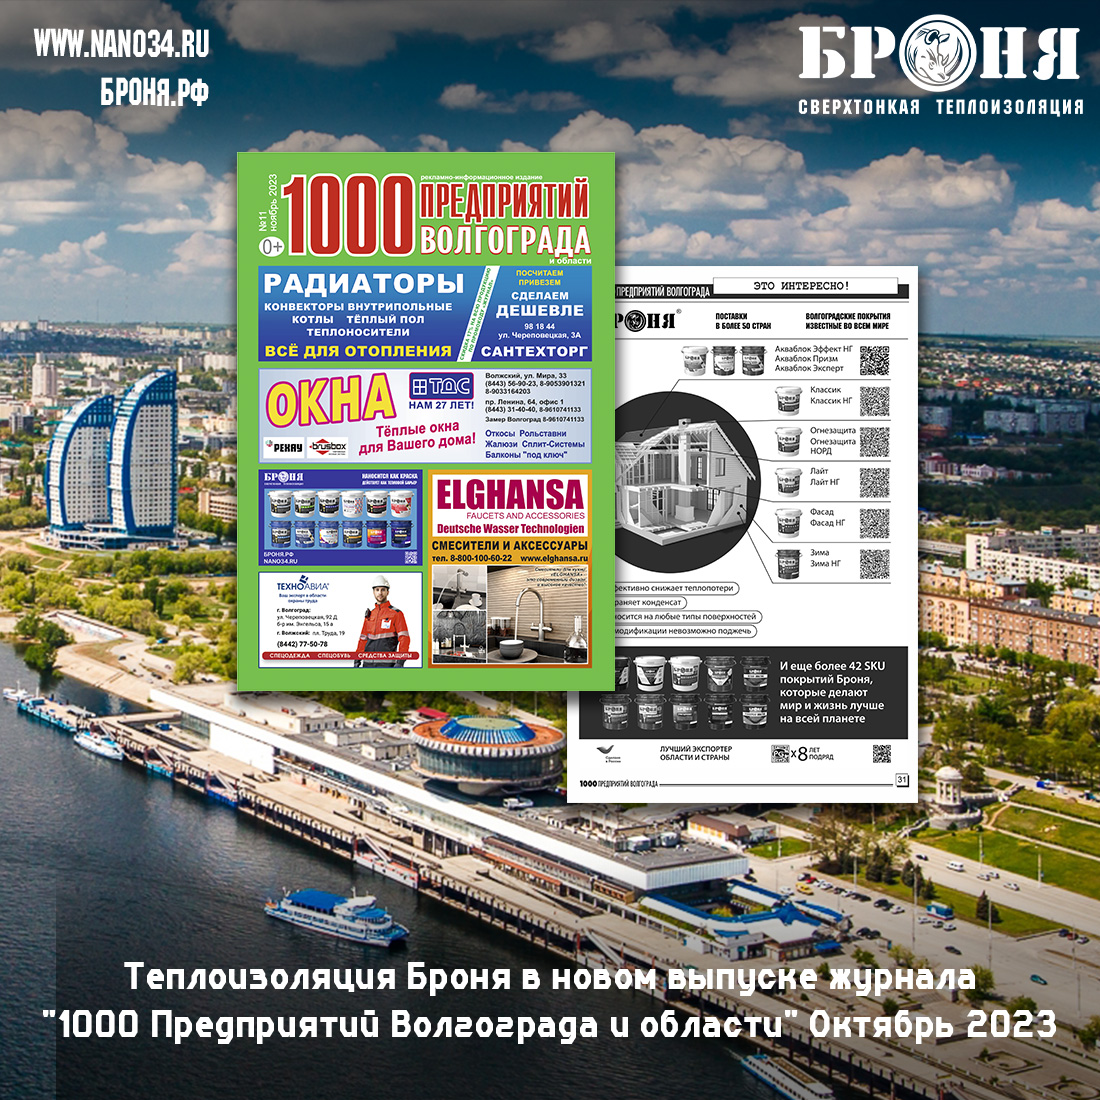 Теплоизоляция Броня в новом выпуске журнала "1000 Предприятий Волгограда и области" октябрь 2023 (скан)